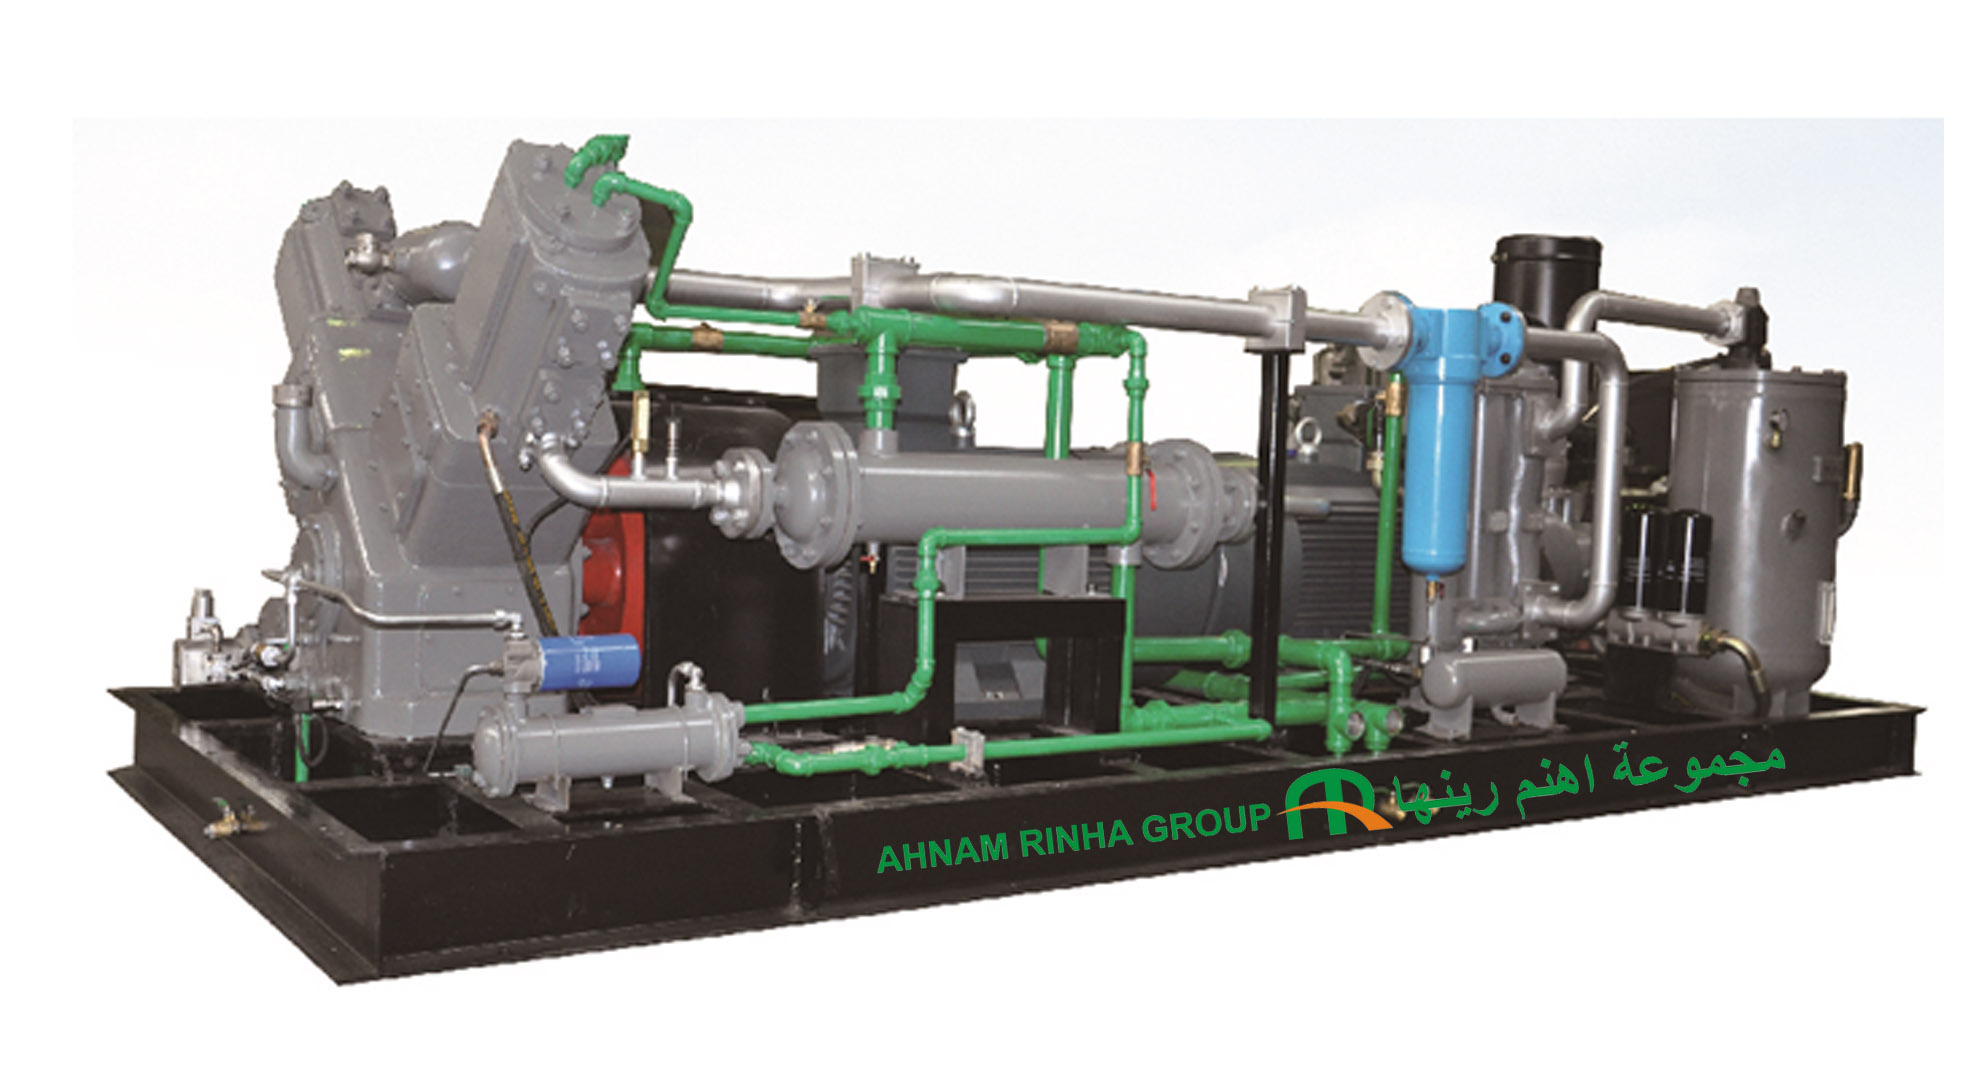 Service Provider of High Pressure Compressor Dubai  